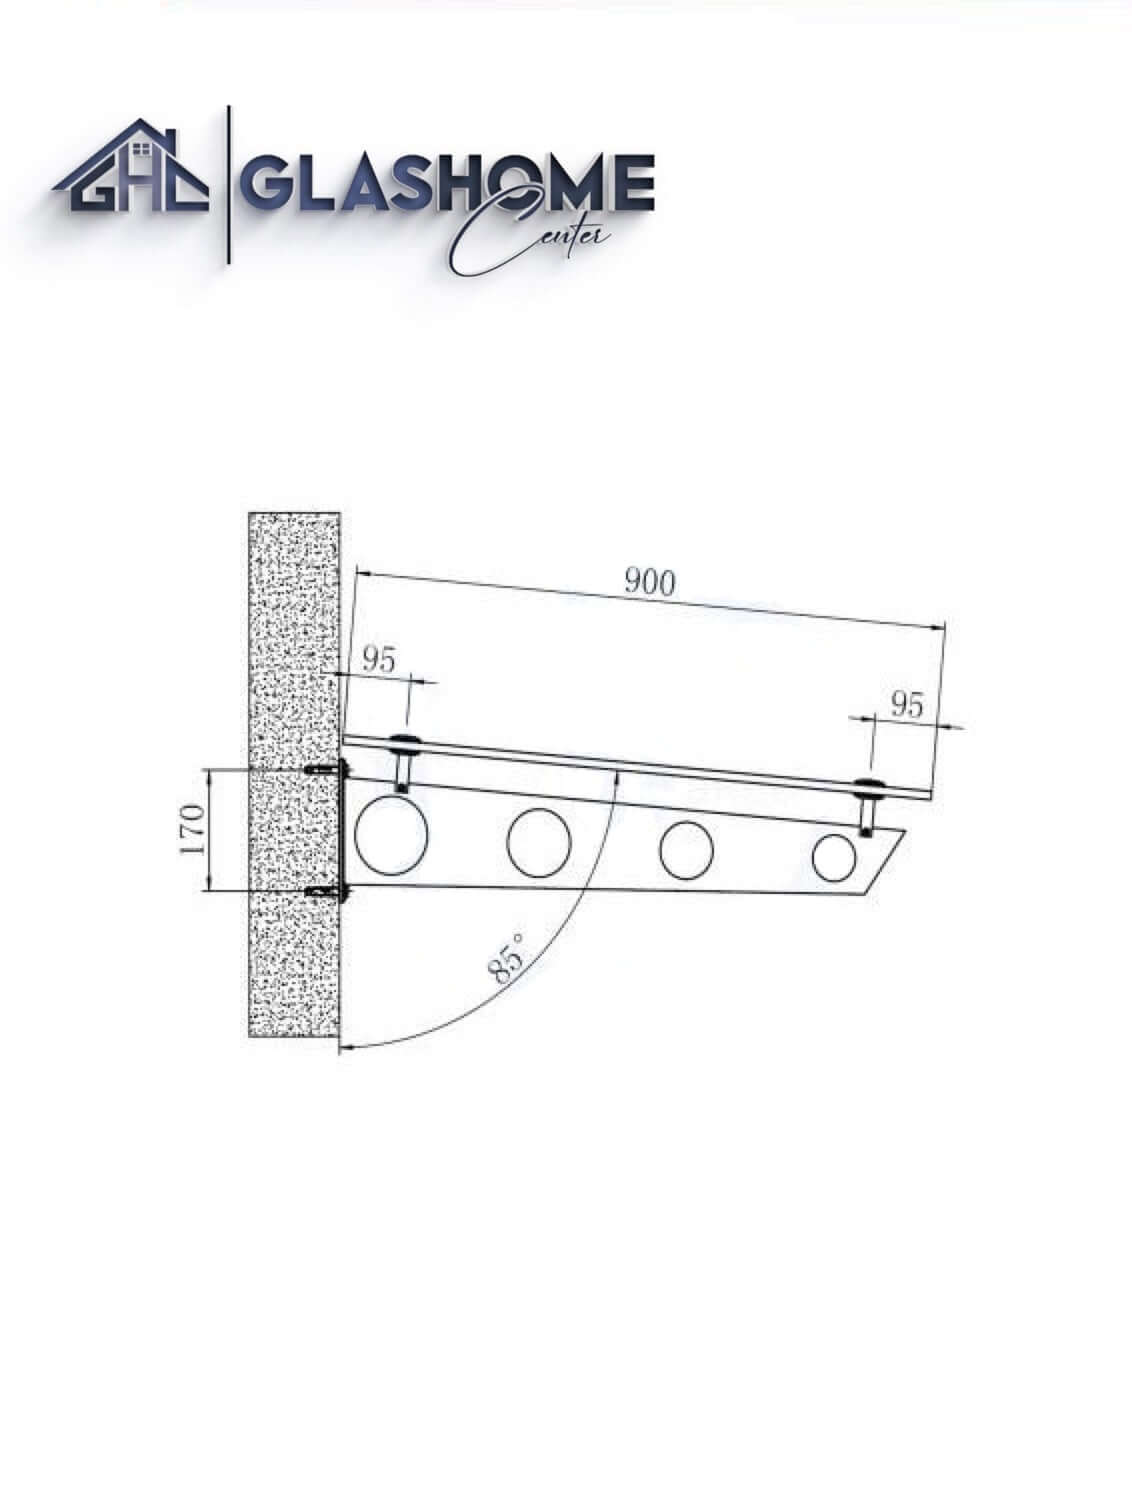 GlasHomeCenter - Glasvordach - Grauglas - 120x90cm - 13.1mm VSG - inkl. 2 schwarze Edelstahlhalterungen Variante "Stockholm"